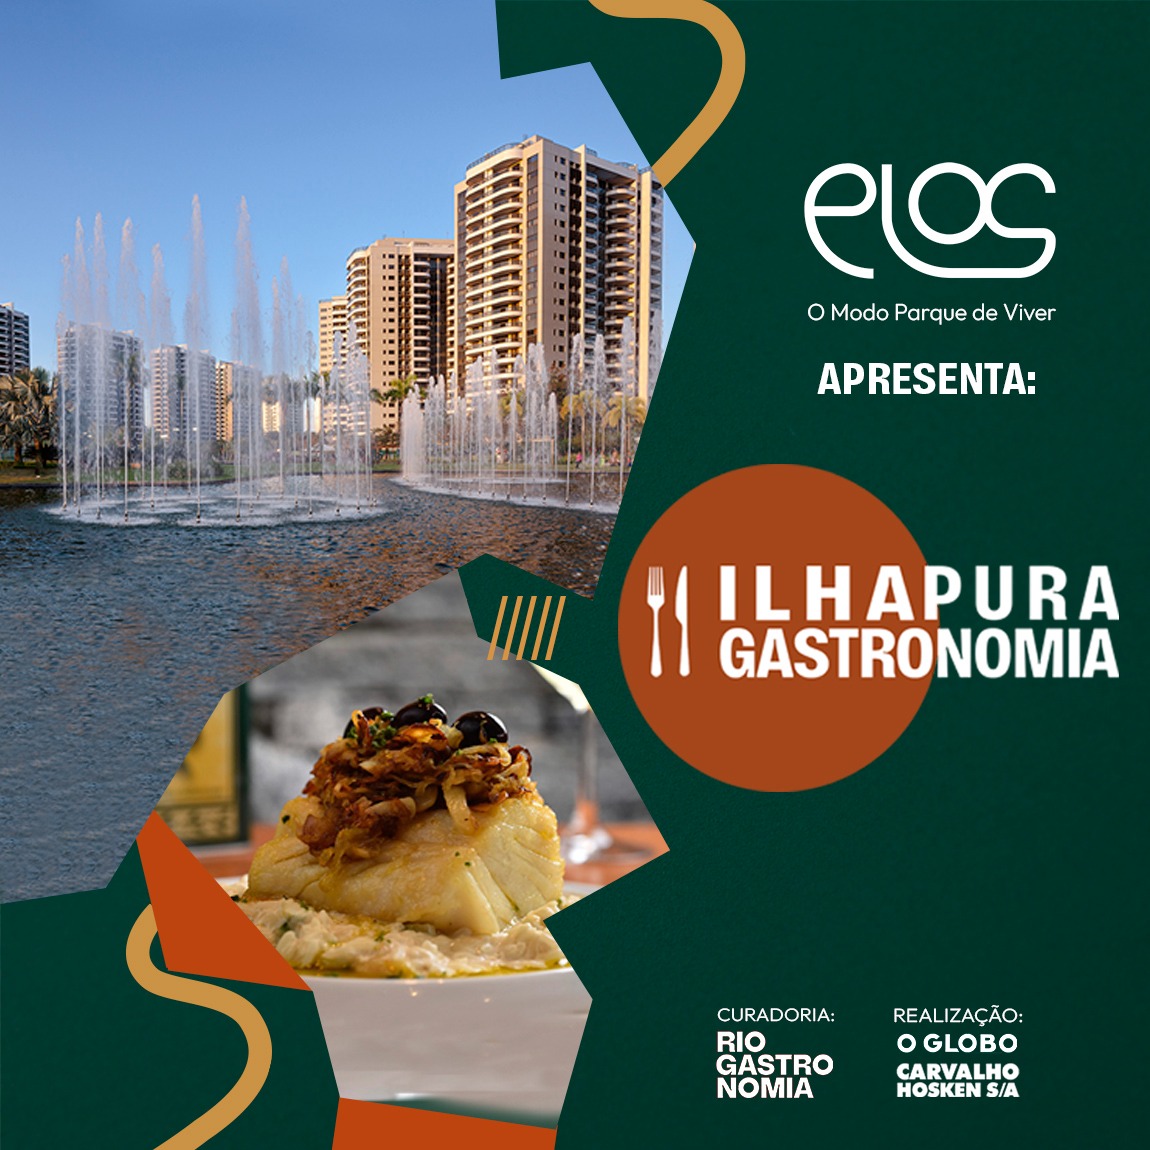 Carvalho Hosken e Elos apresentam o Ilha Pura Gastronomia